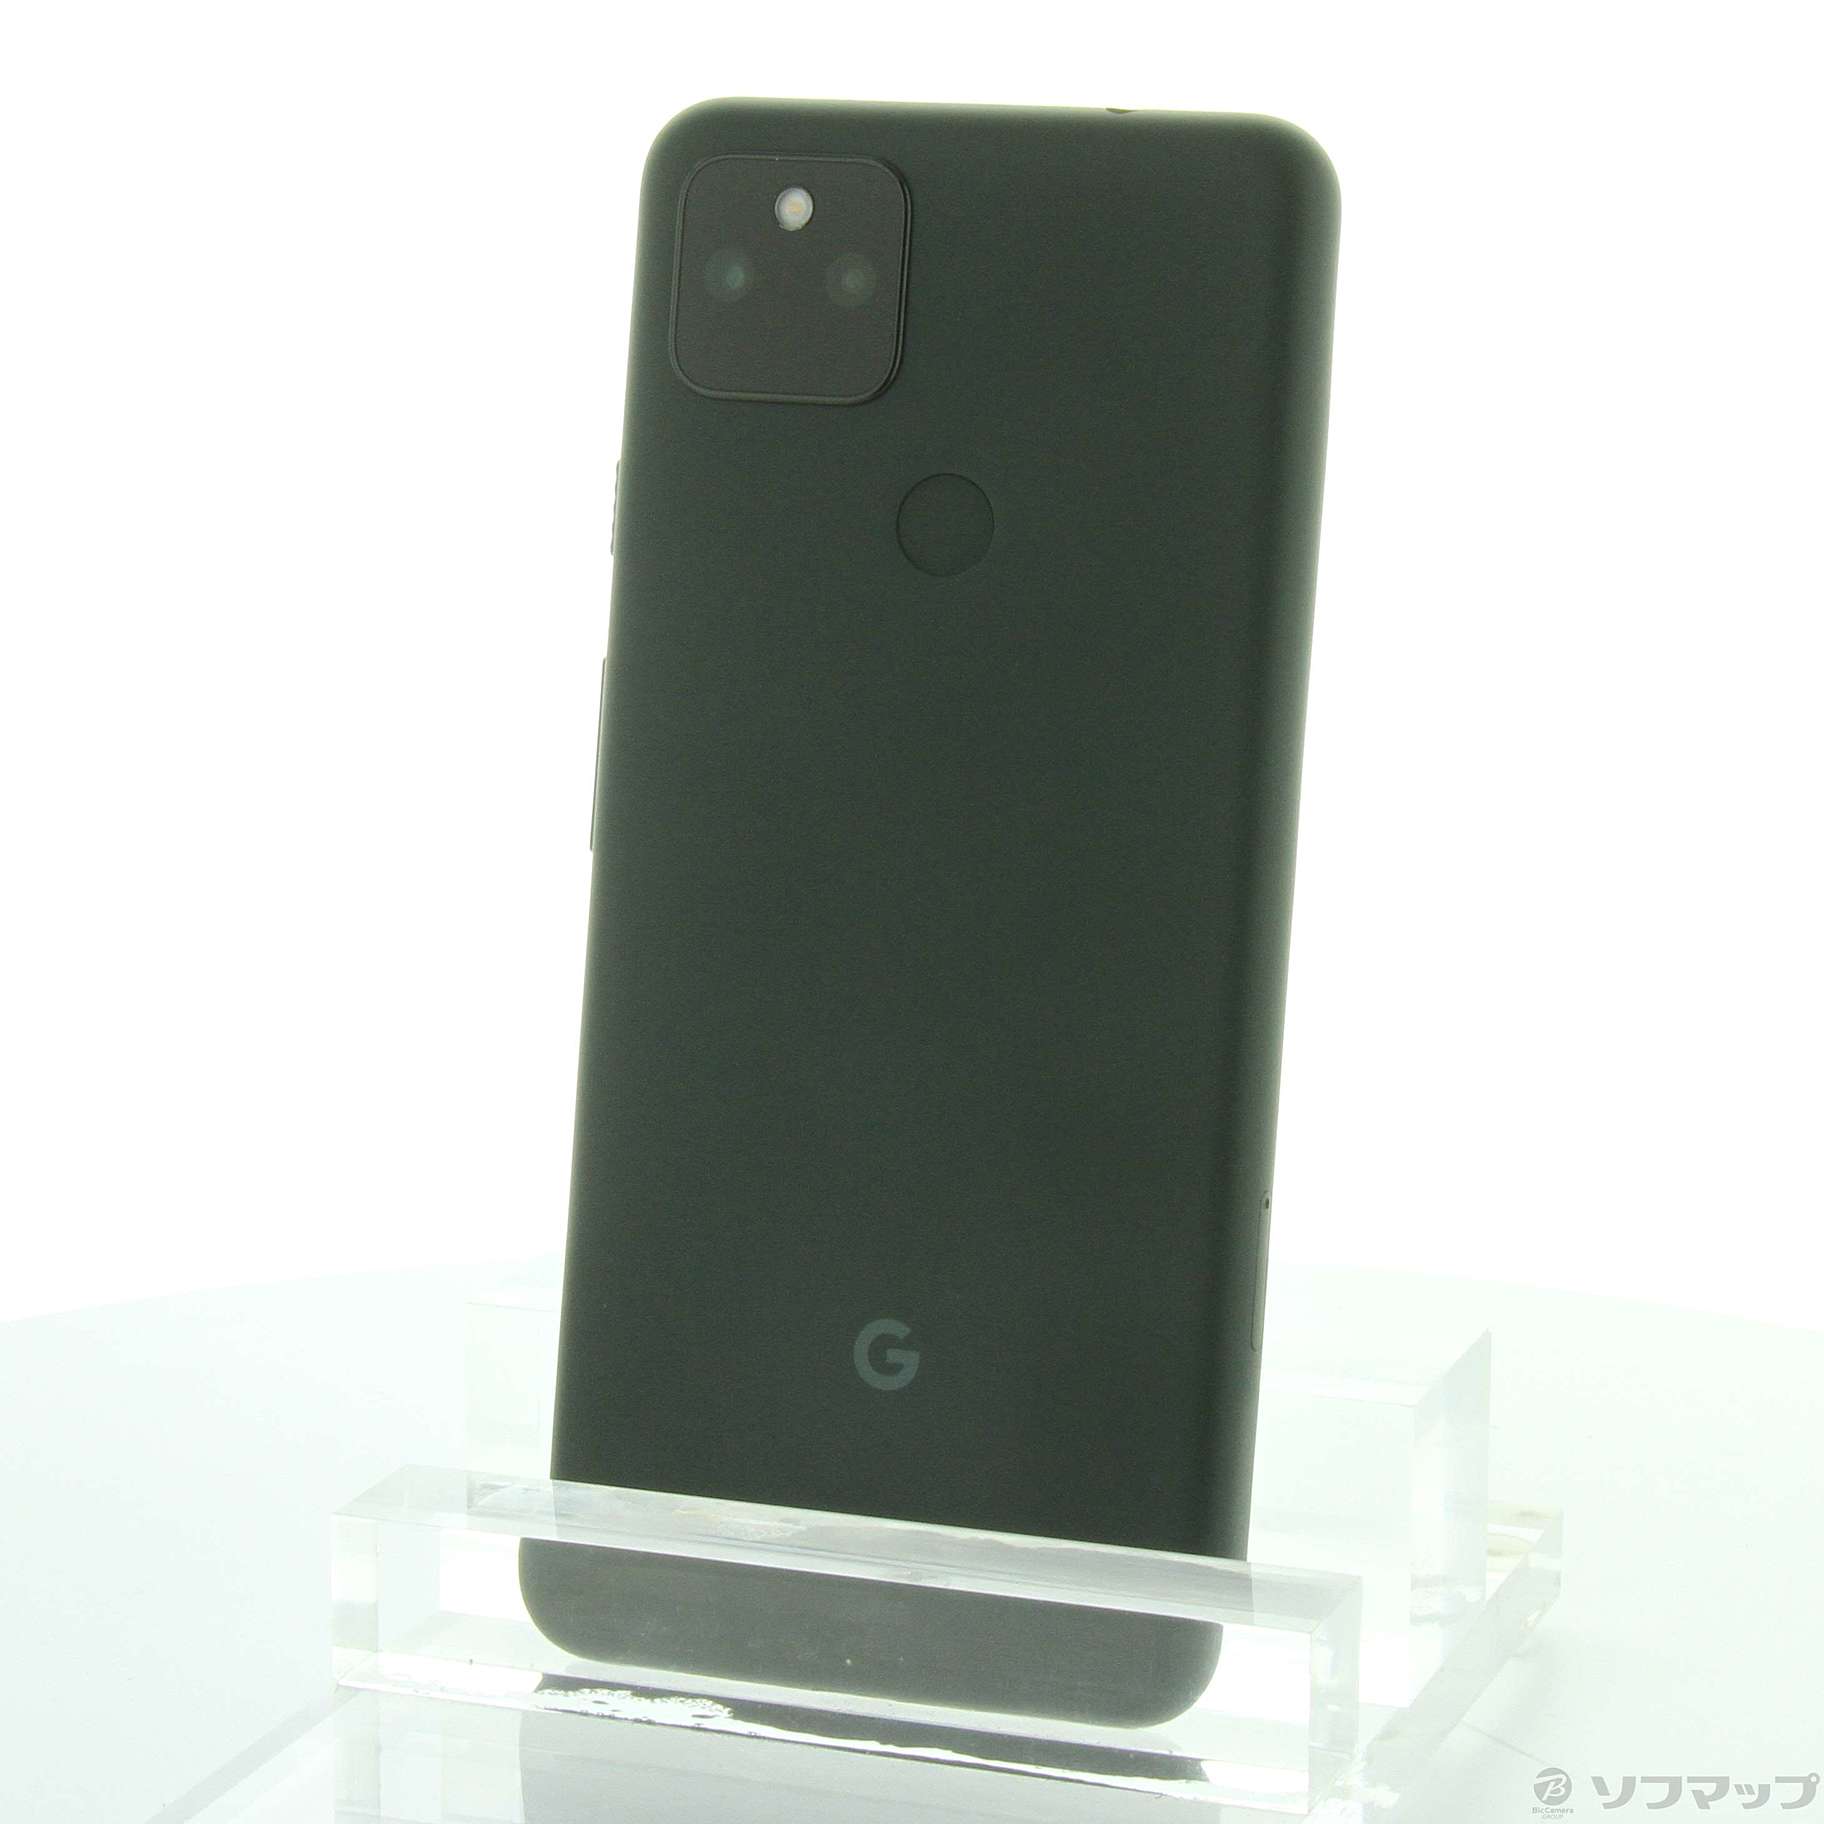 6,900円Google Pixel 5a ☆128GB☆ Black ソフトバンク